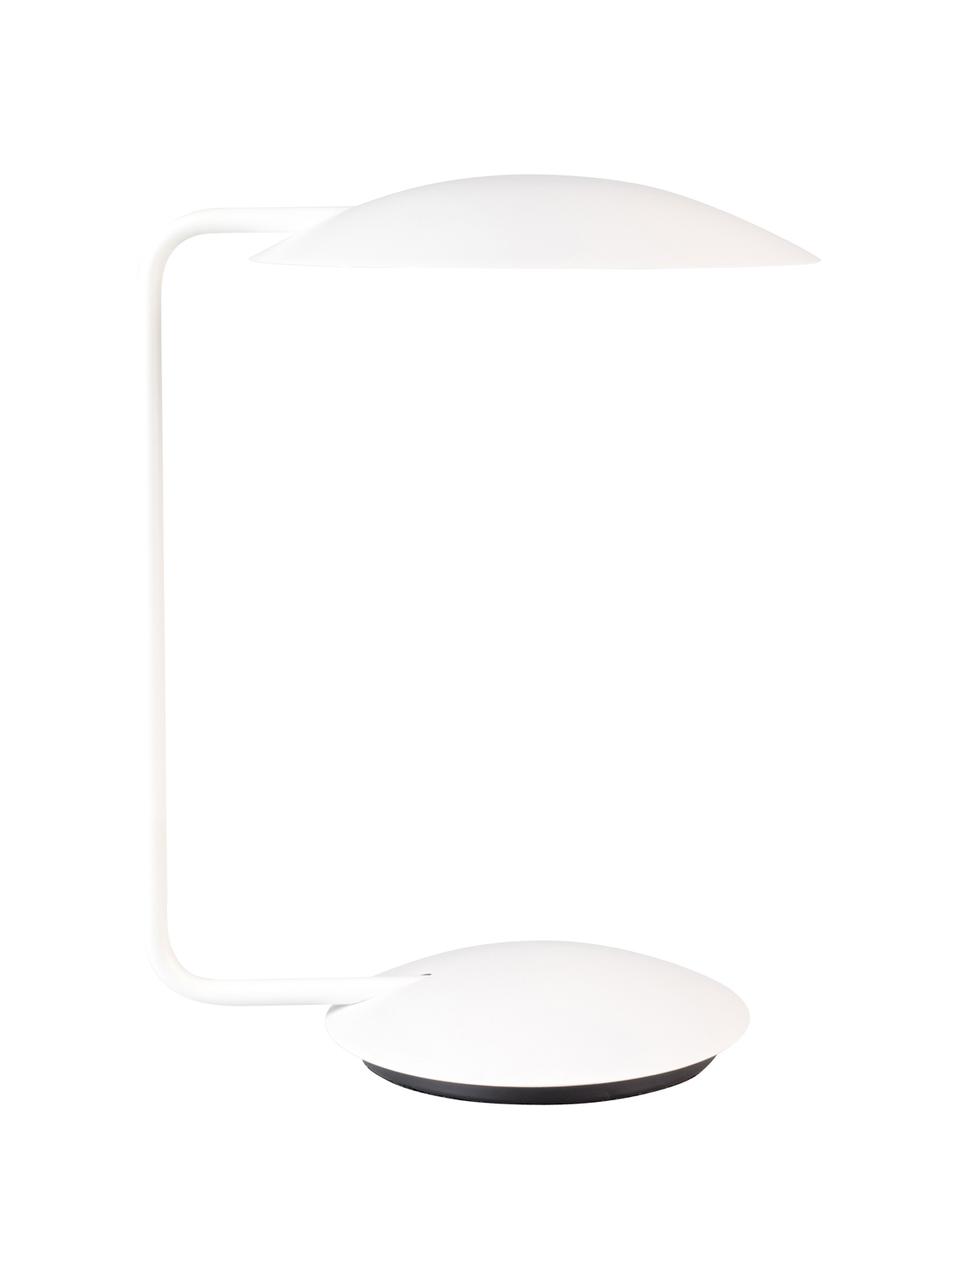 Tischlampe Pixie in Weiß, Lampenschirm: Metall, pulverbeschichtet, Lampenfuß: Metall, pulverbeschichtet, Weiß, B 25 x H 39 cm